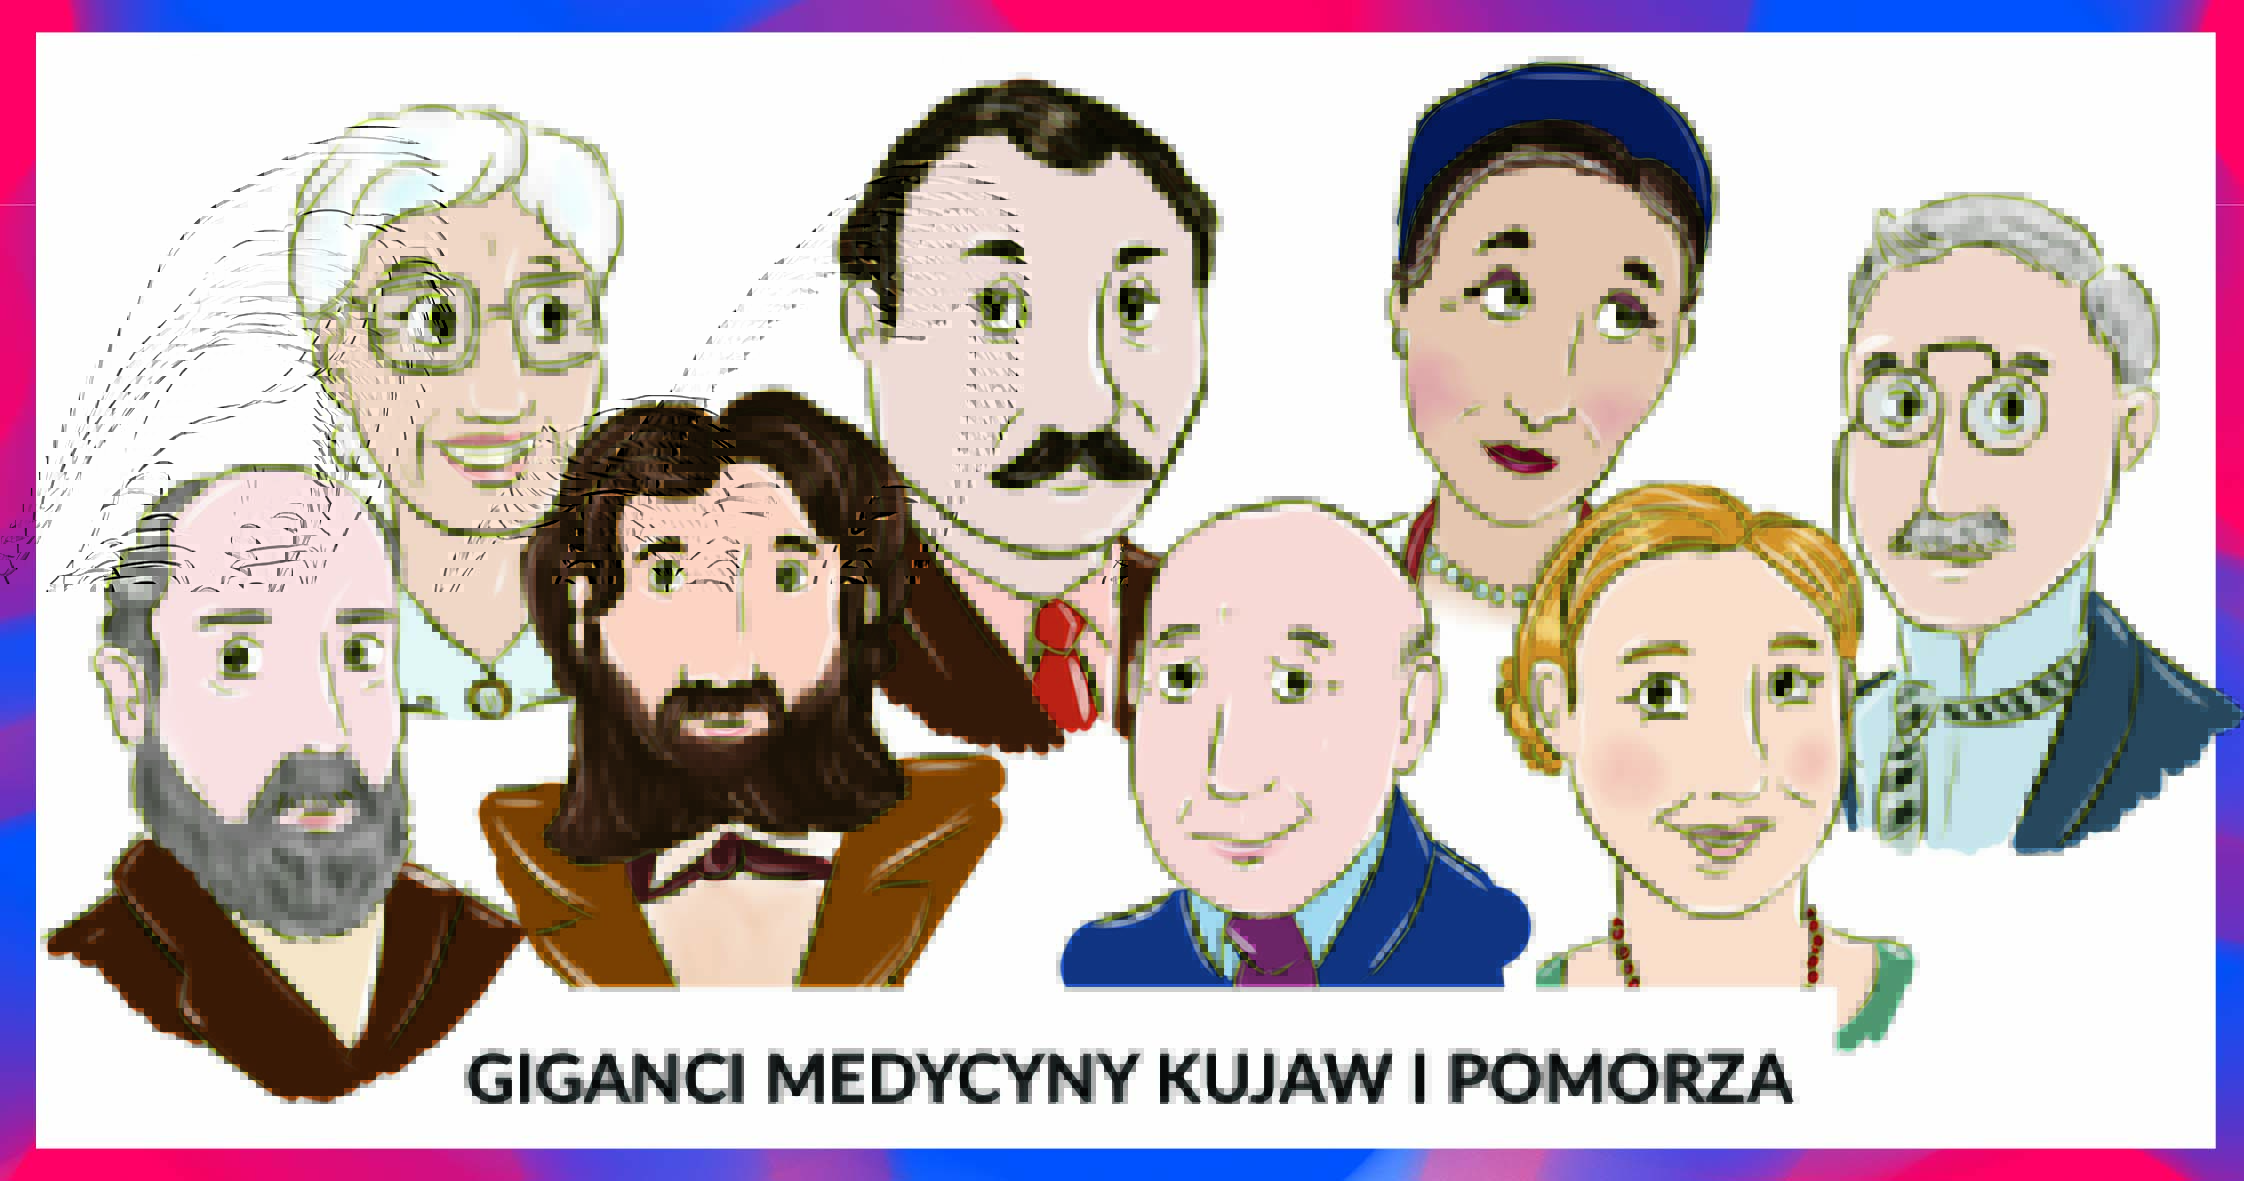 baner Giganci Medycyny Kujaw i Pomorza to osiem postaci w grafice wektorowej: 2 kobiety i 5 mężczyzn ubranych elegancko